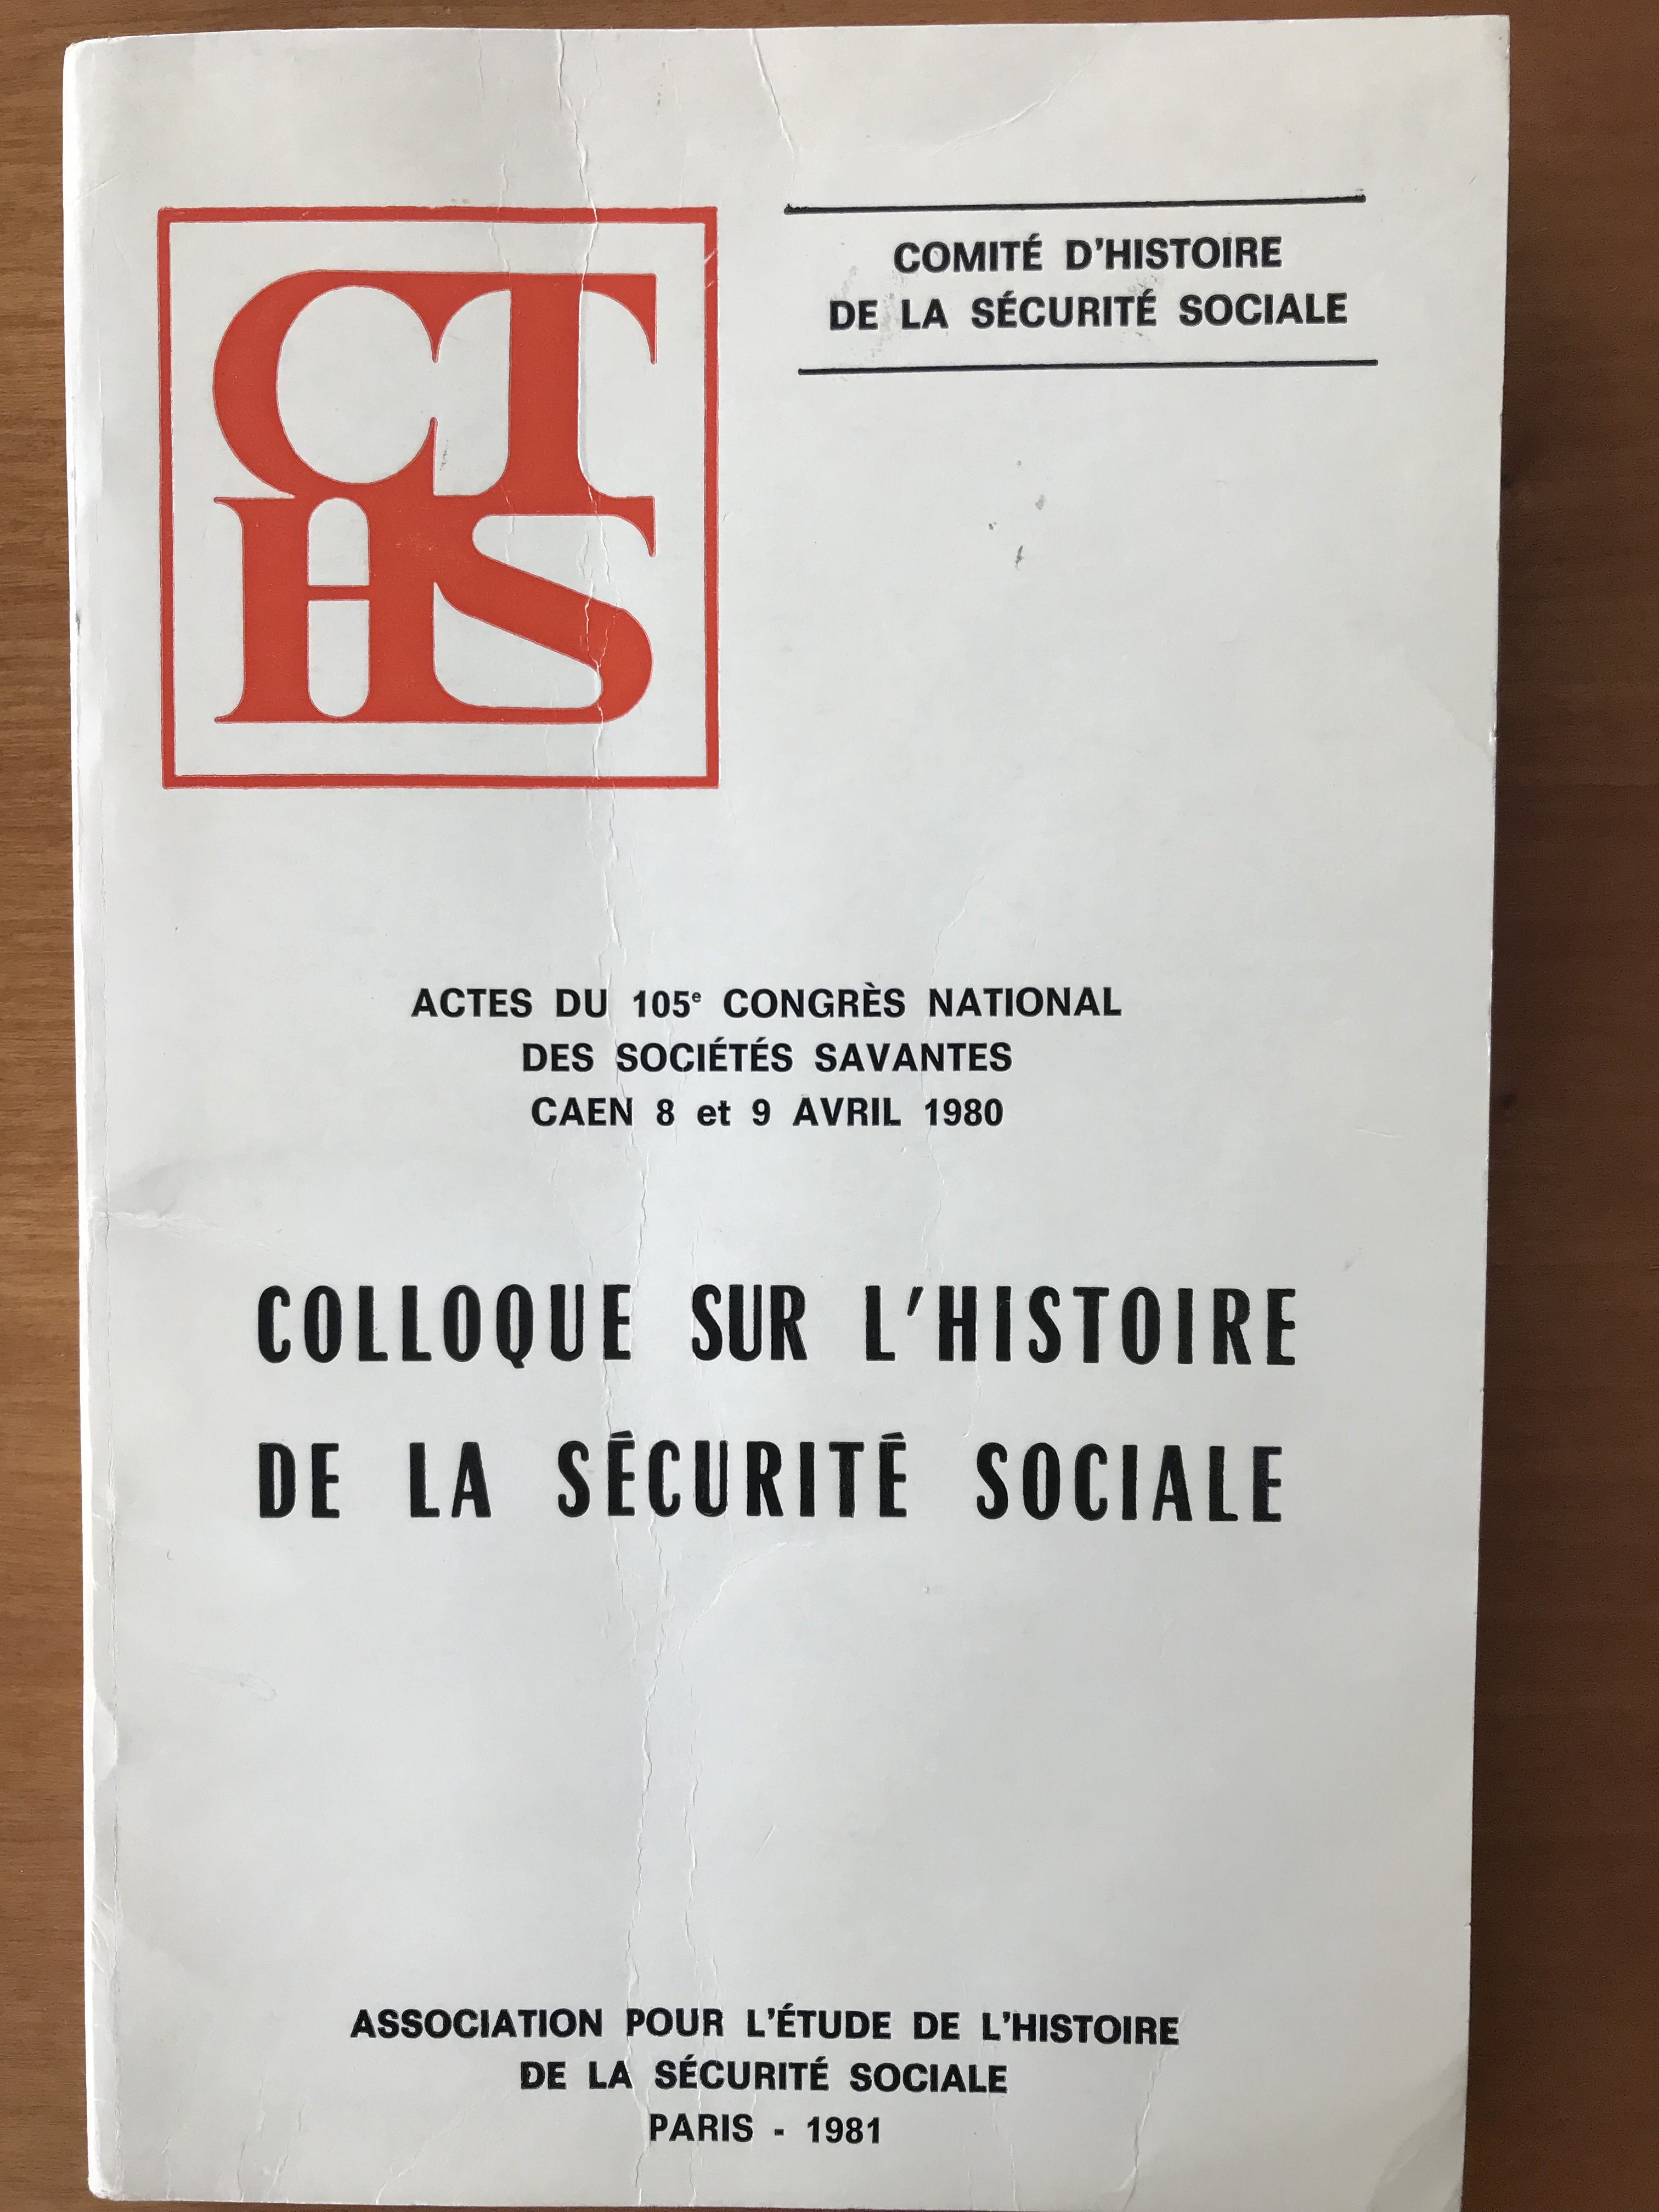 Colloque sur l’histoire de la sécurité sociale – Actes du 105e congrès national des sociétés savantes Caen 8 et 9 avril 1980